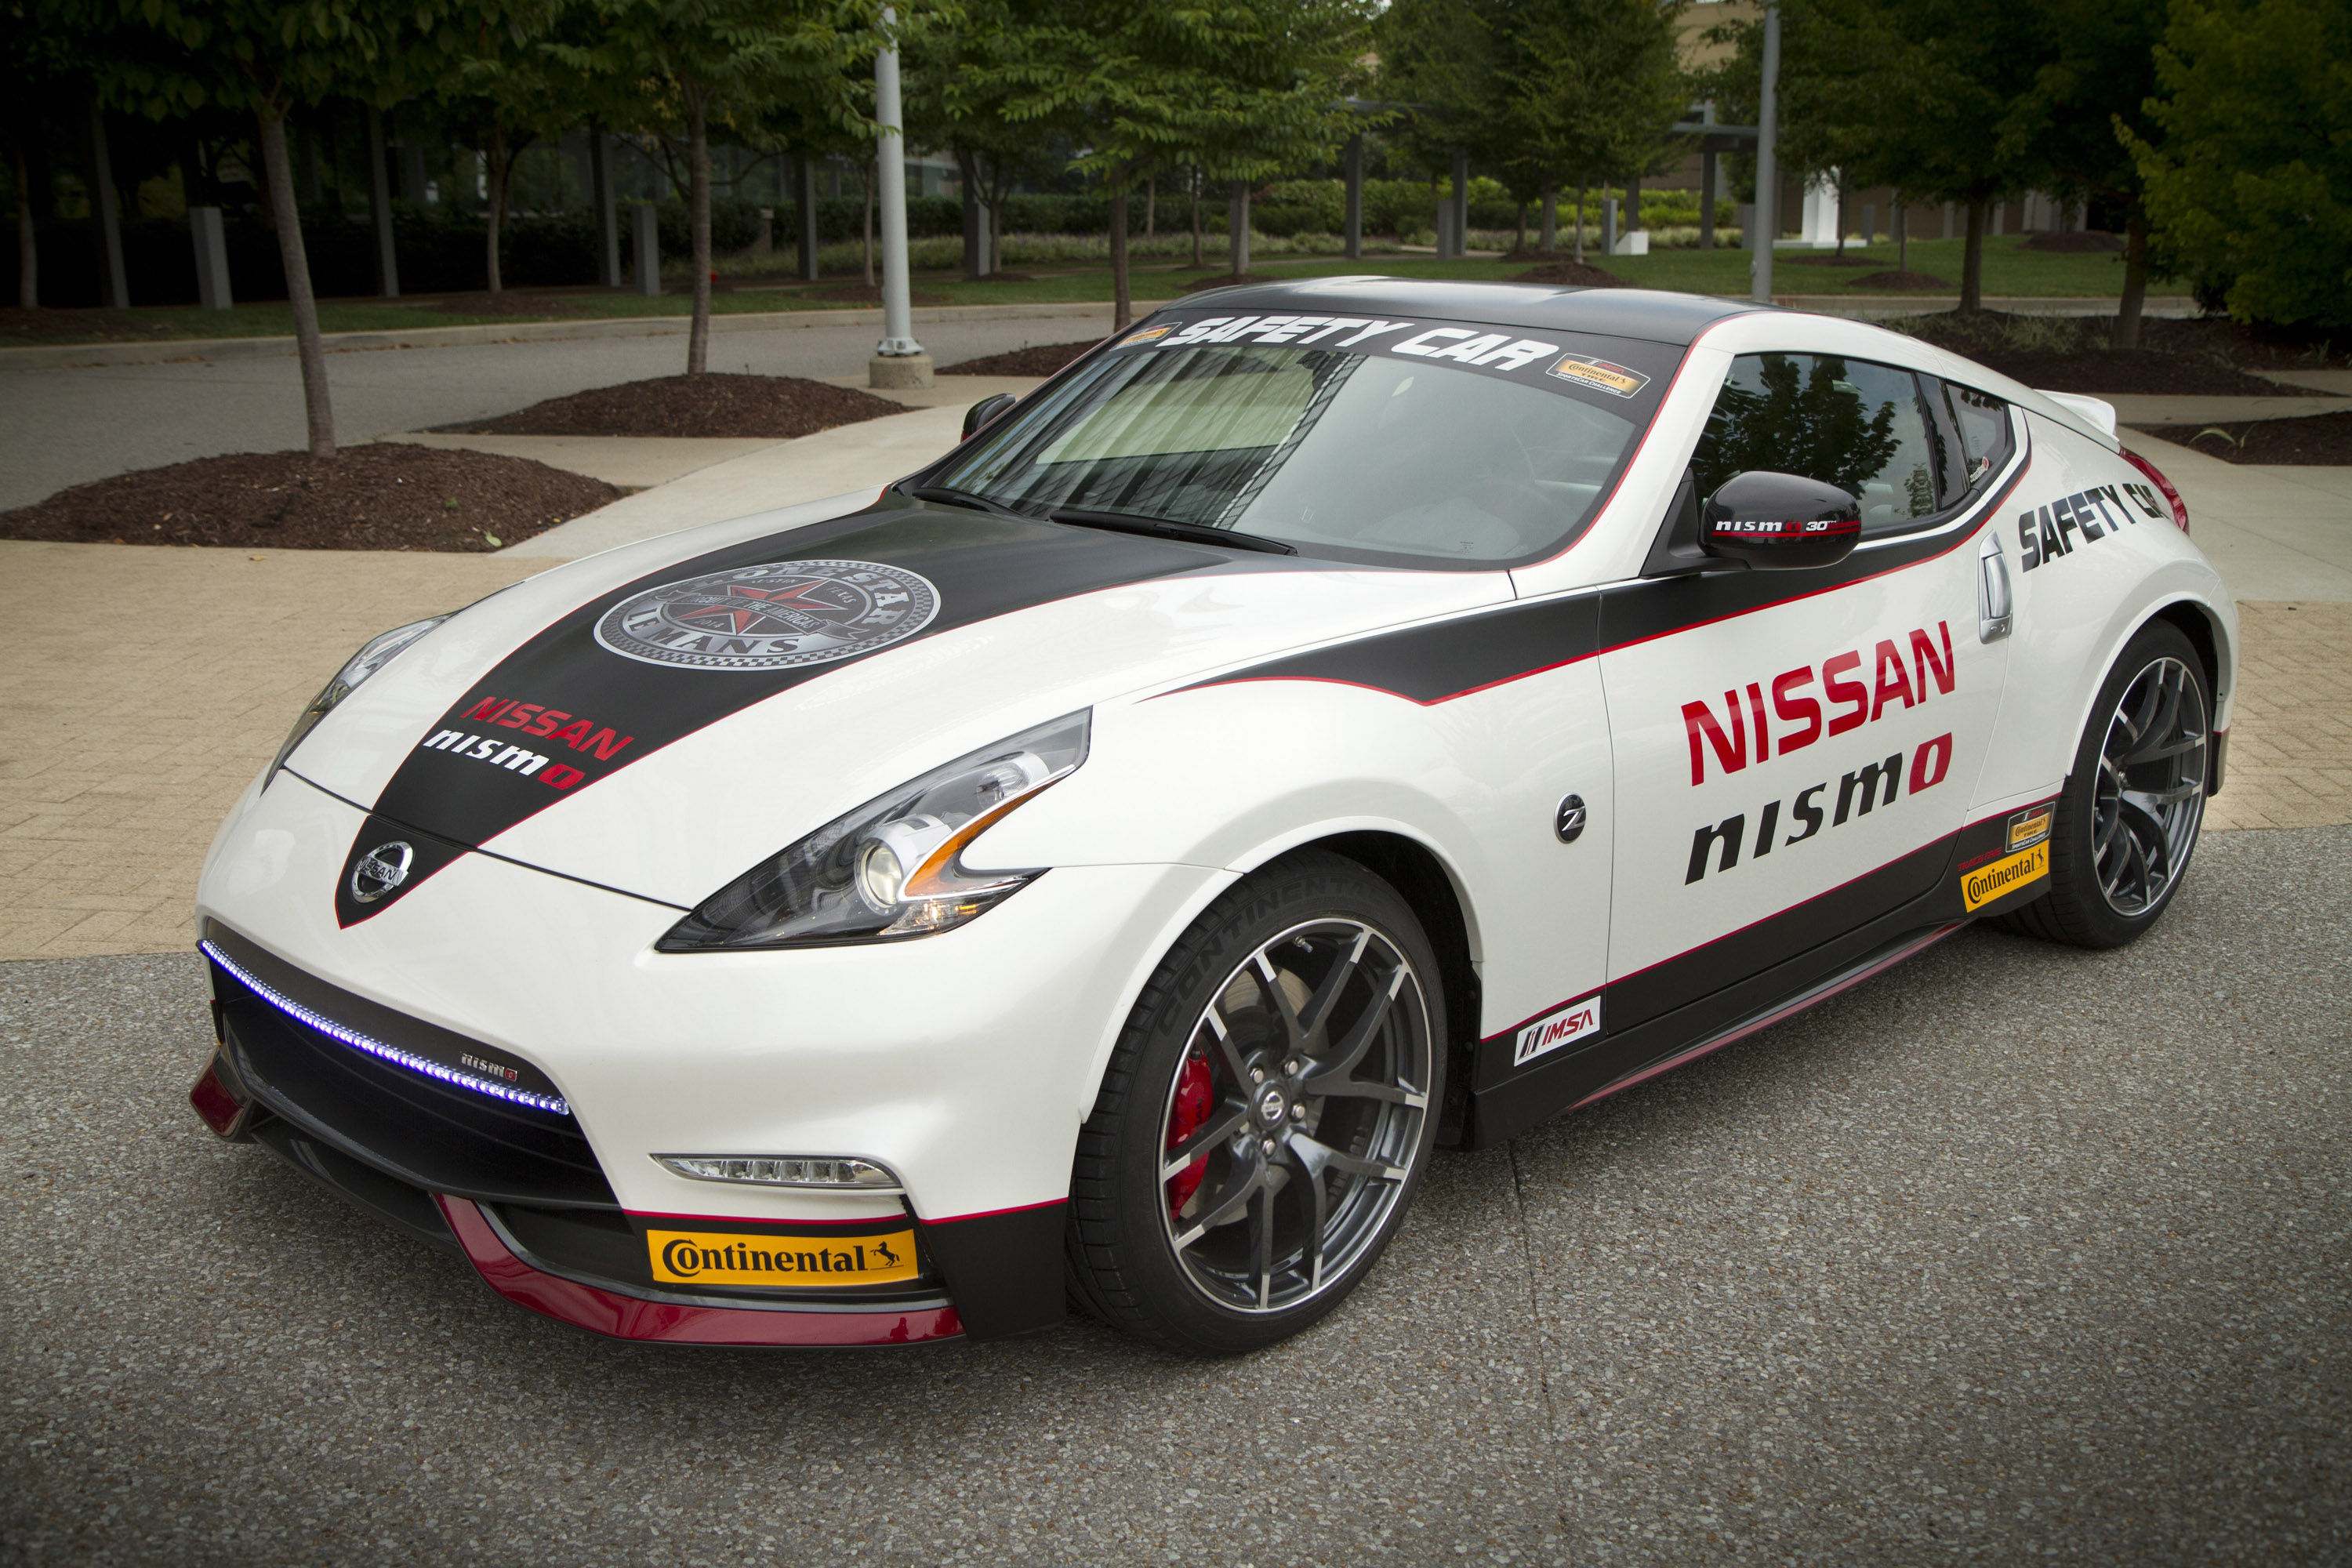 Nissan GT-R Nismo Safety Car